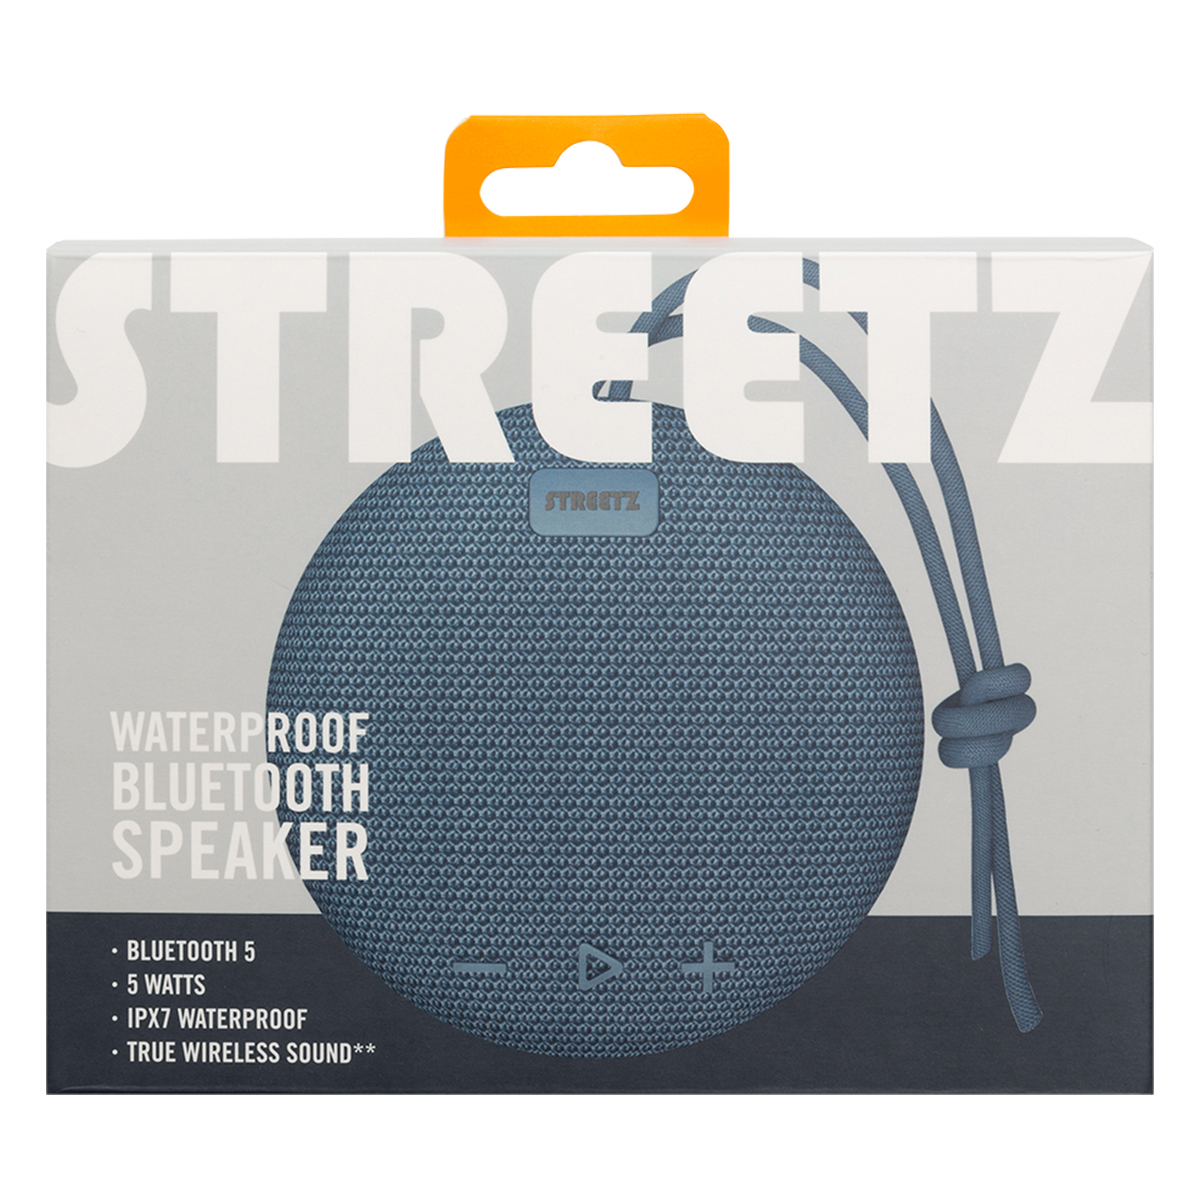 STREETZ Vattentålig Bluetooth-högtalare, TWS, 5W, IPX7, blå